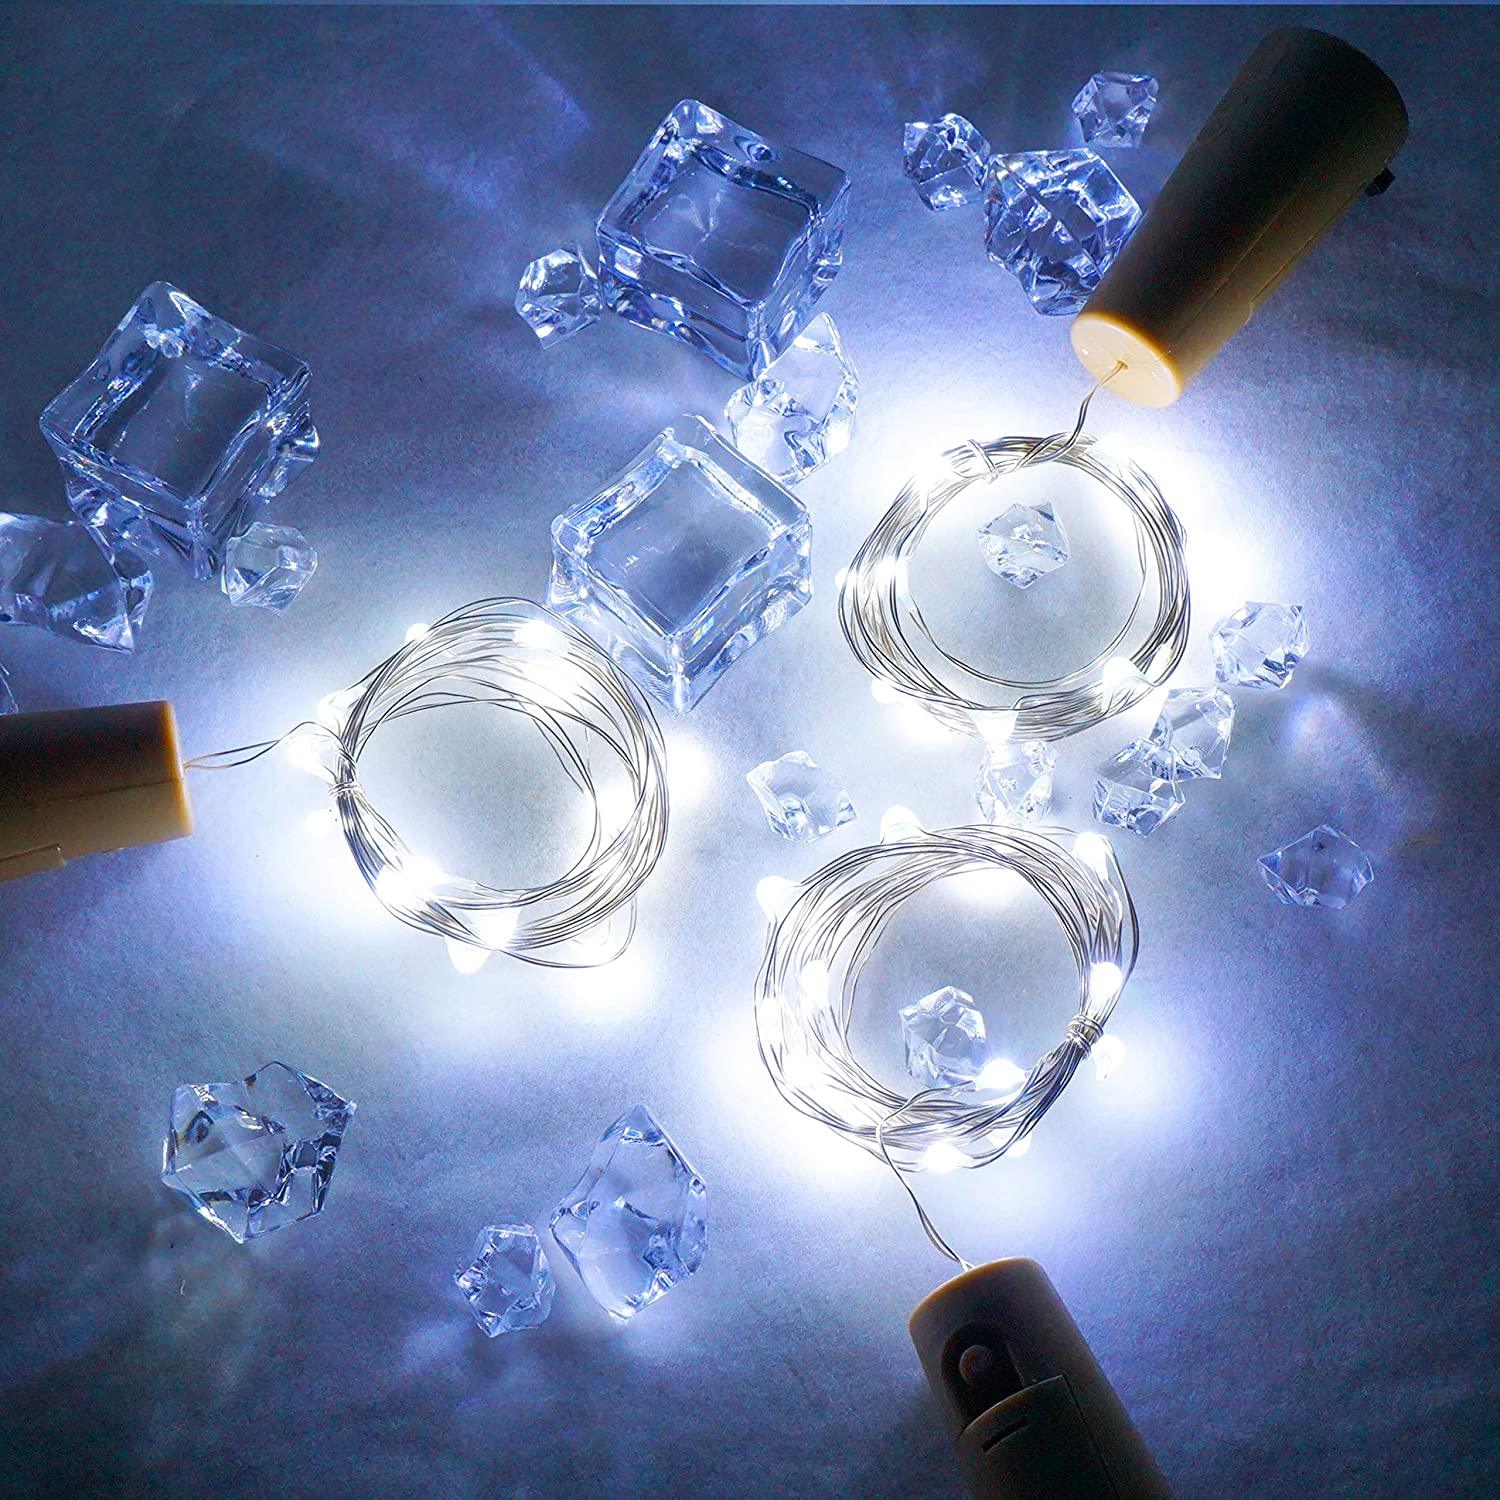 Fairy Mini String Lights For Liquor Bottles - Decotree.co Online Shop